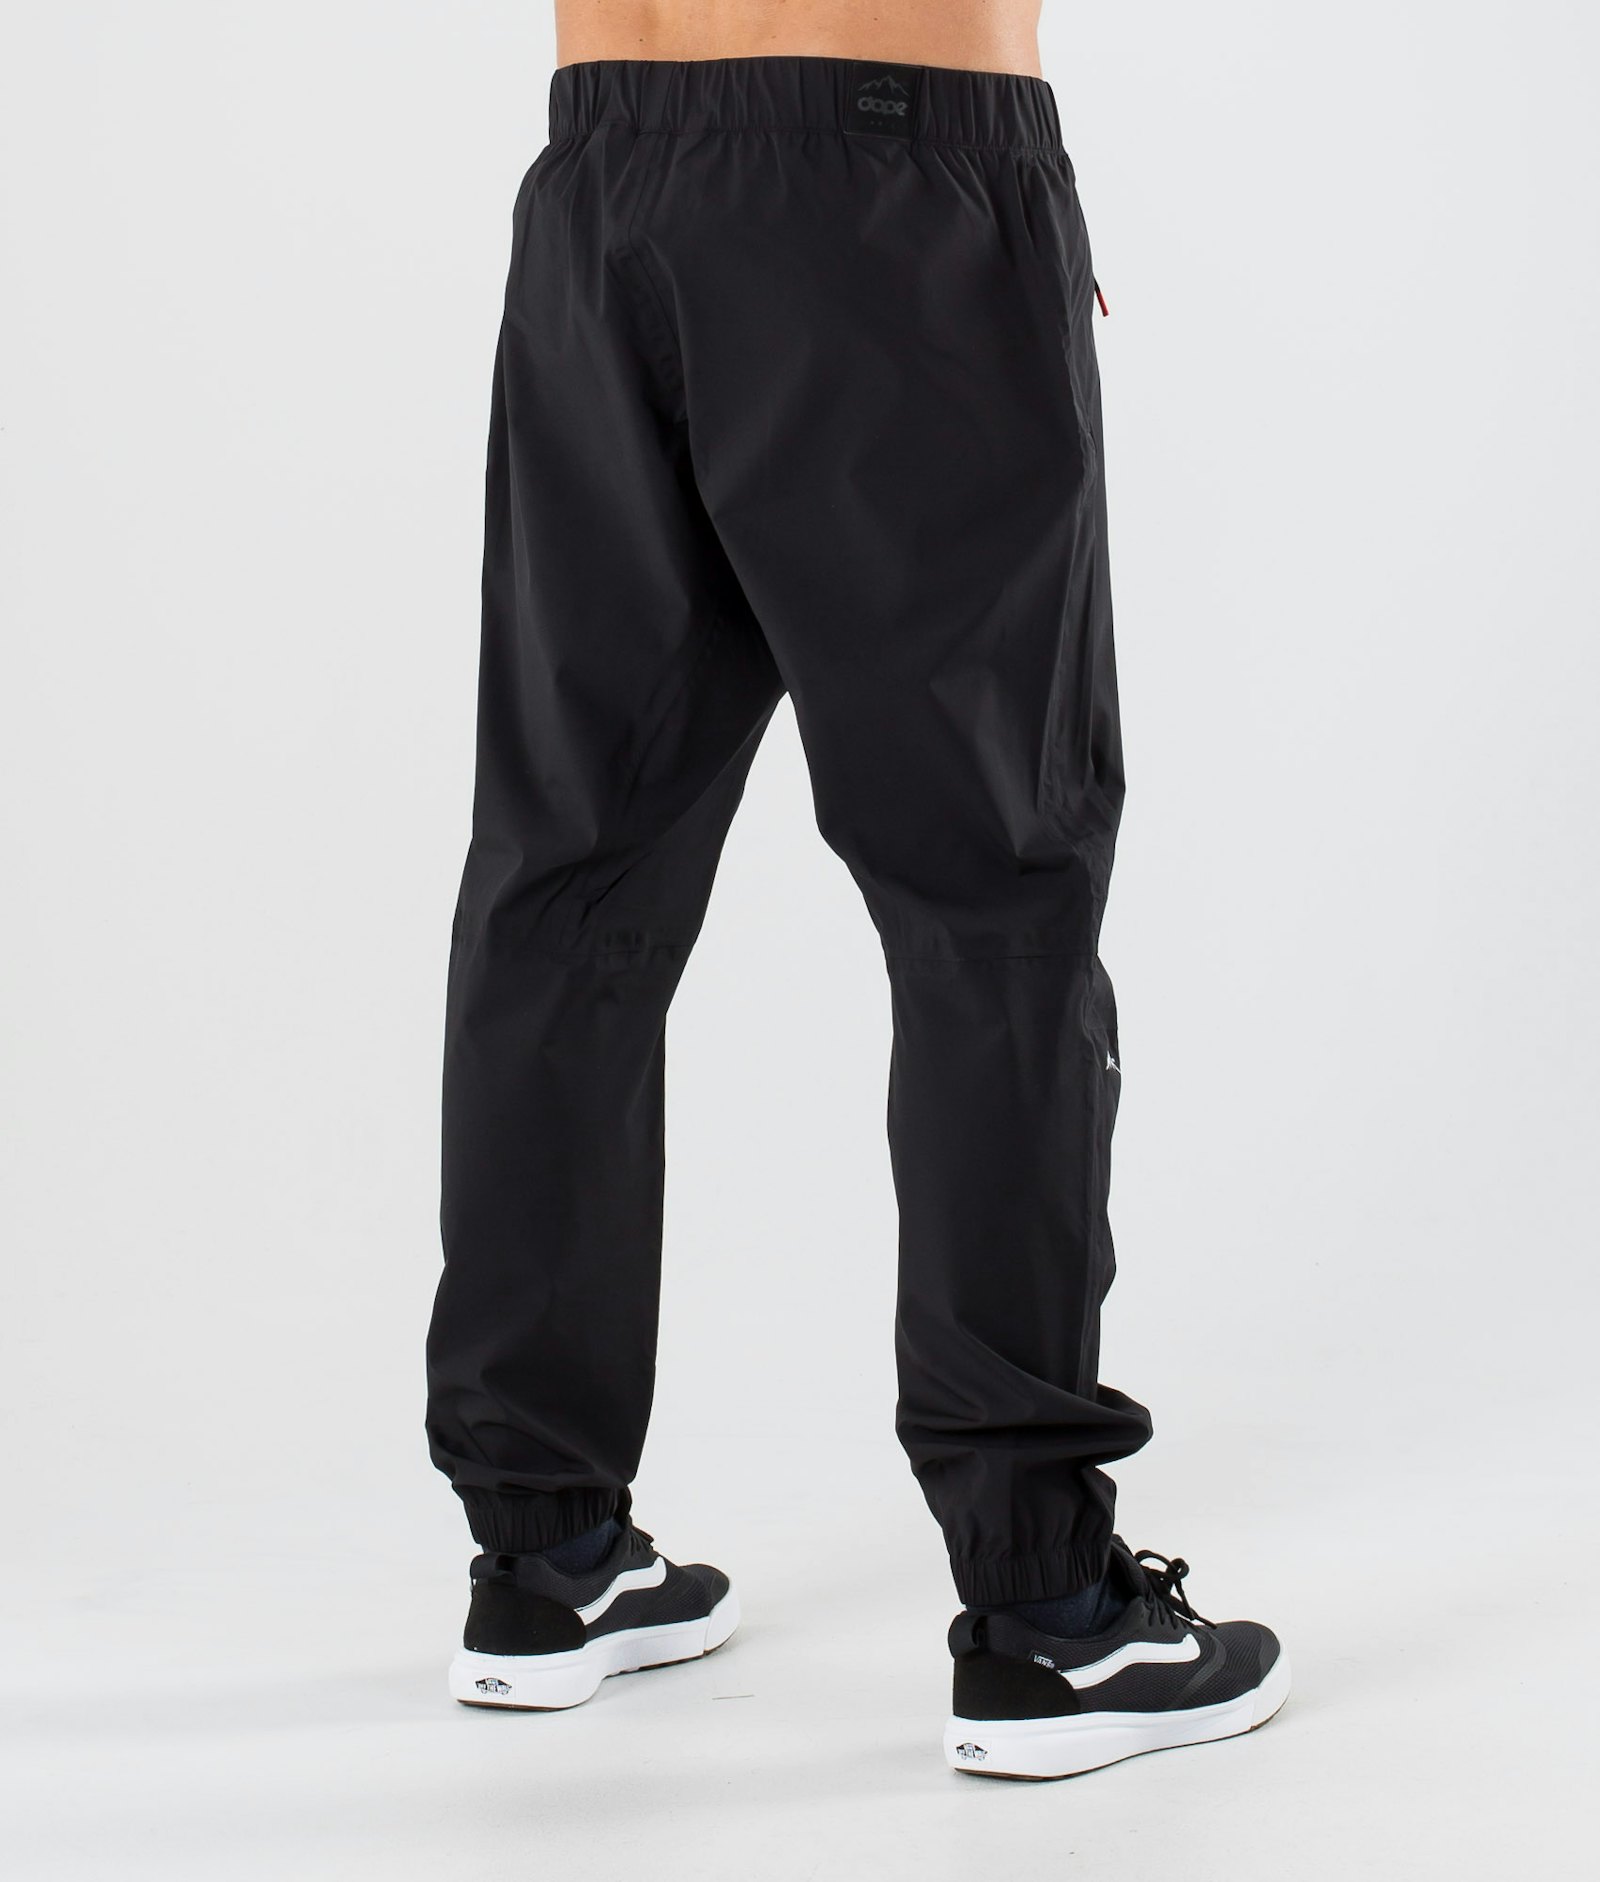 Dope Drizzard 2020 Spodnie Przeciwdeszczowe Mężczyźni Black